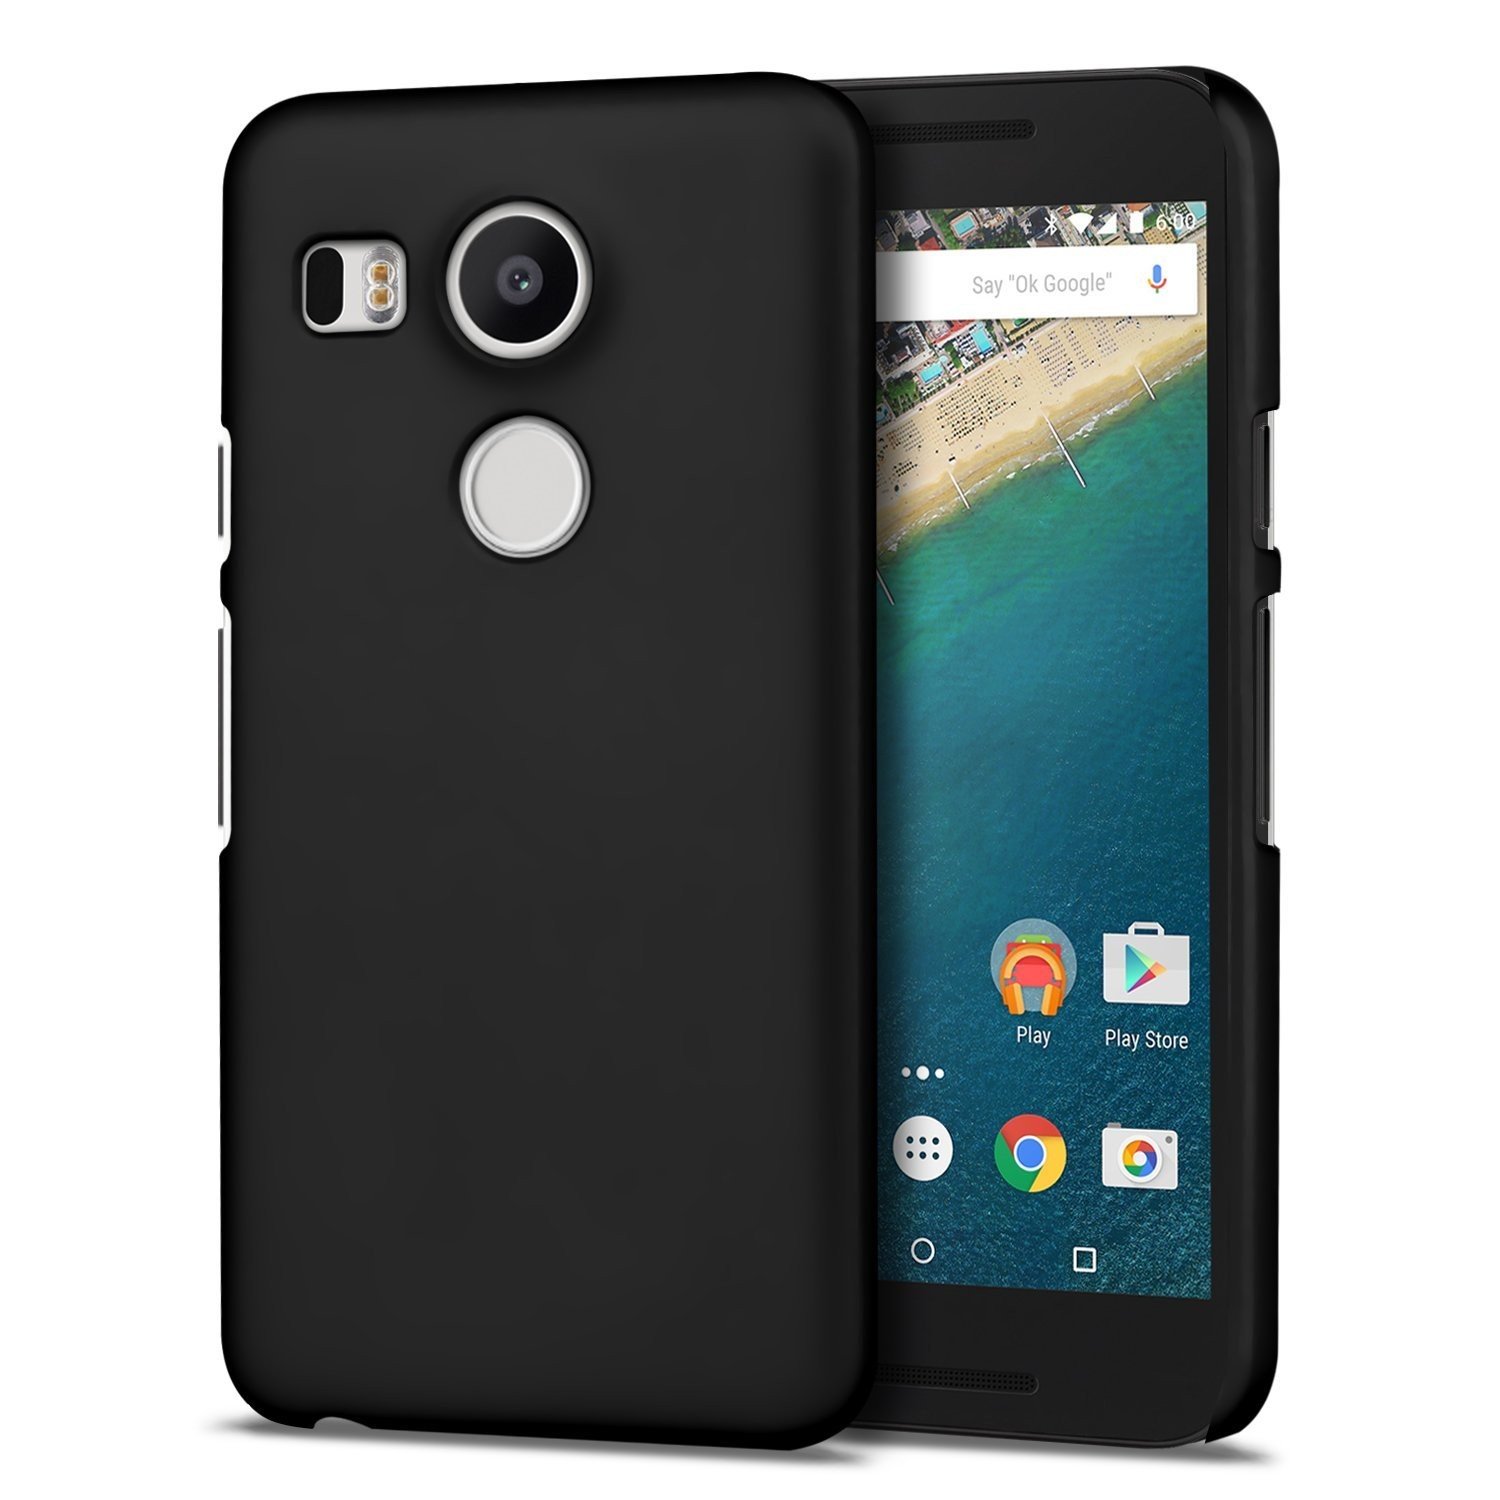 Senaat einde wijk Zwarte LG Nexus 5X hard case online kopen | MobileSupplies.nl